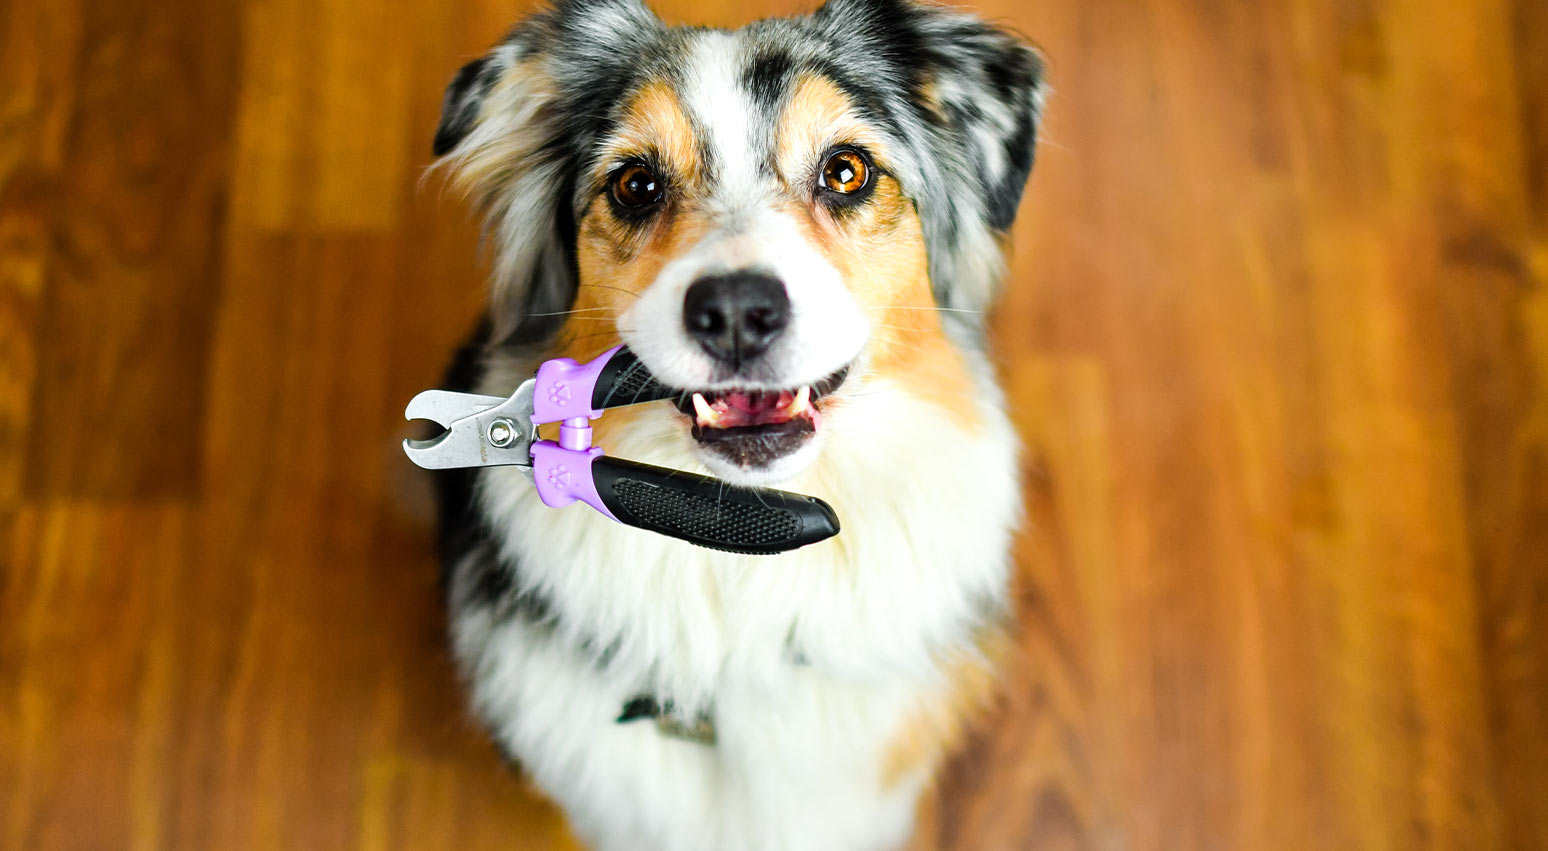 How to Trim Your Dog's Nails - VetCare Pet Hospital